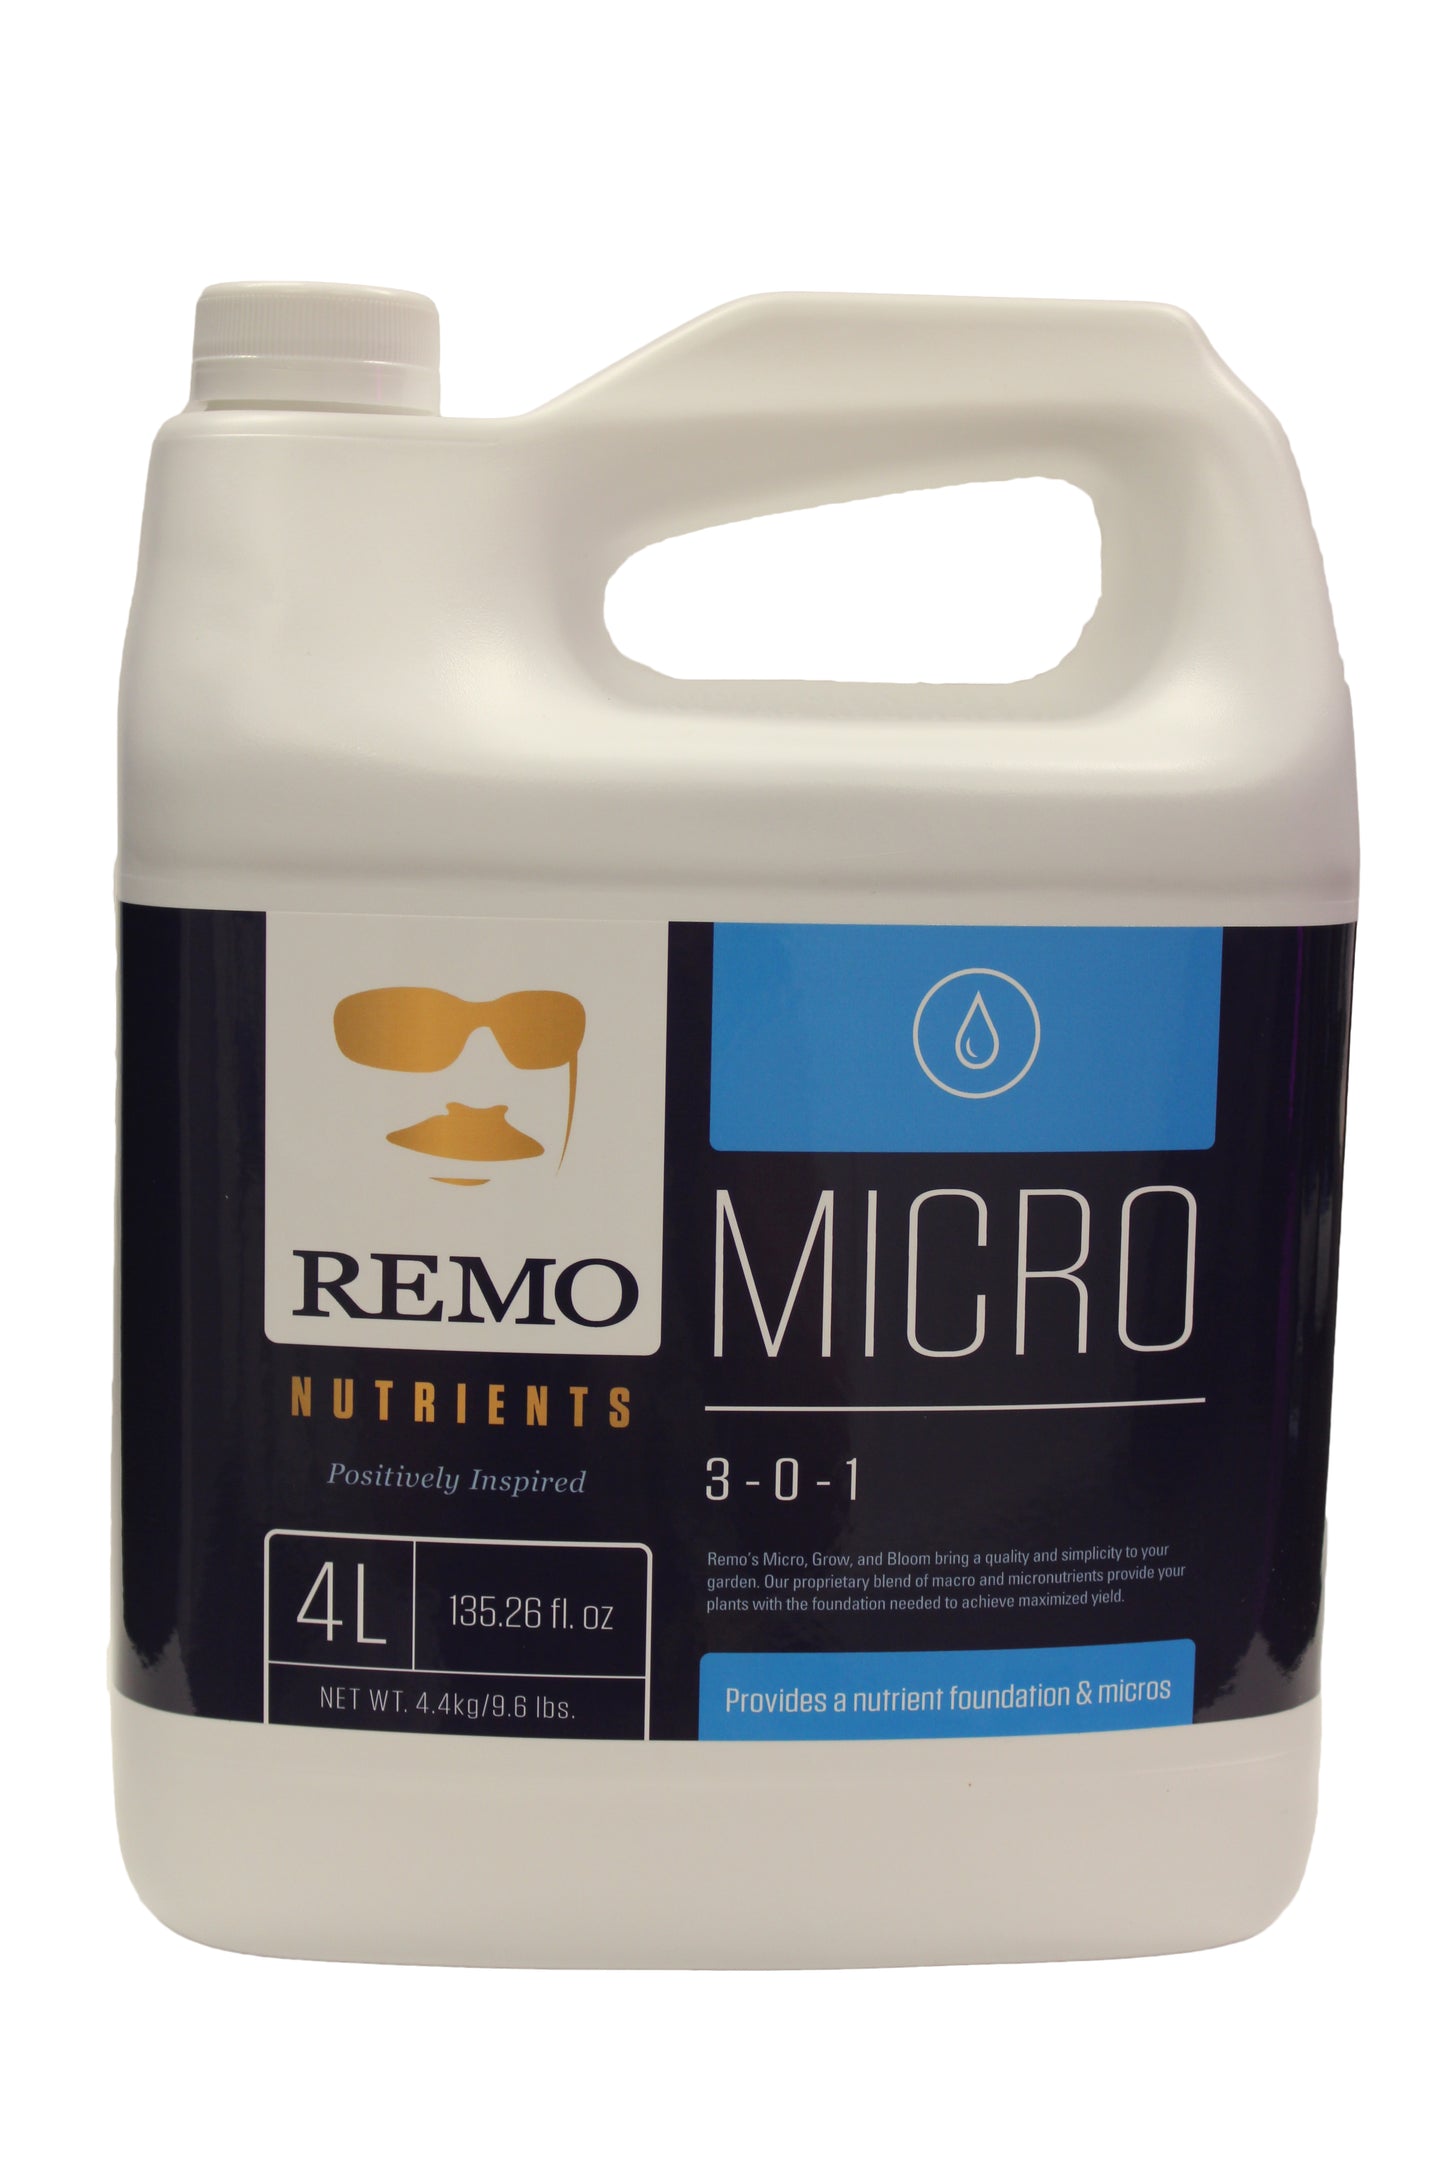 Remo Micro